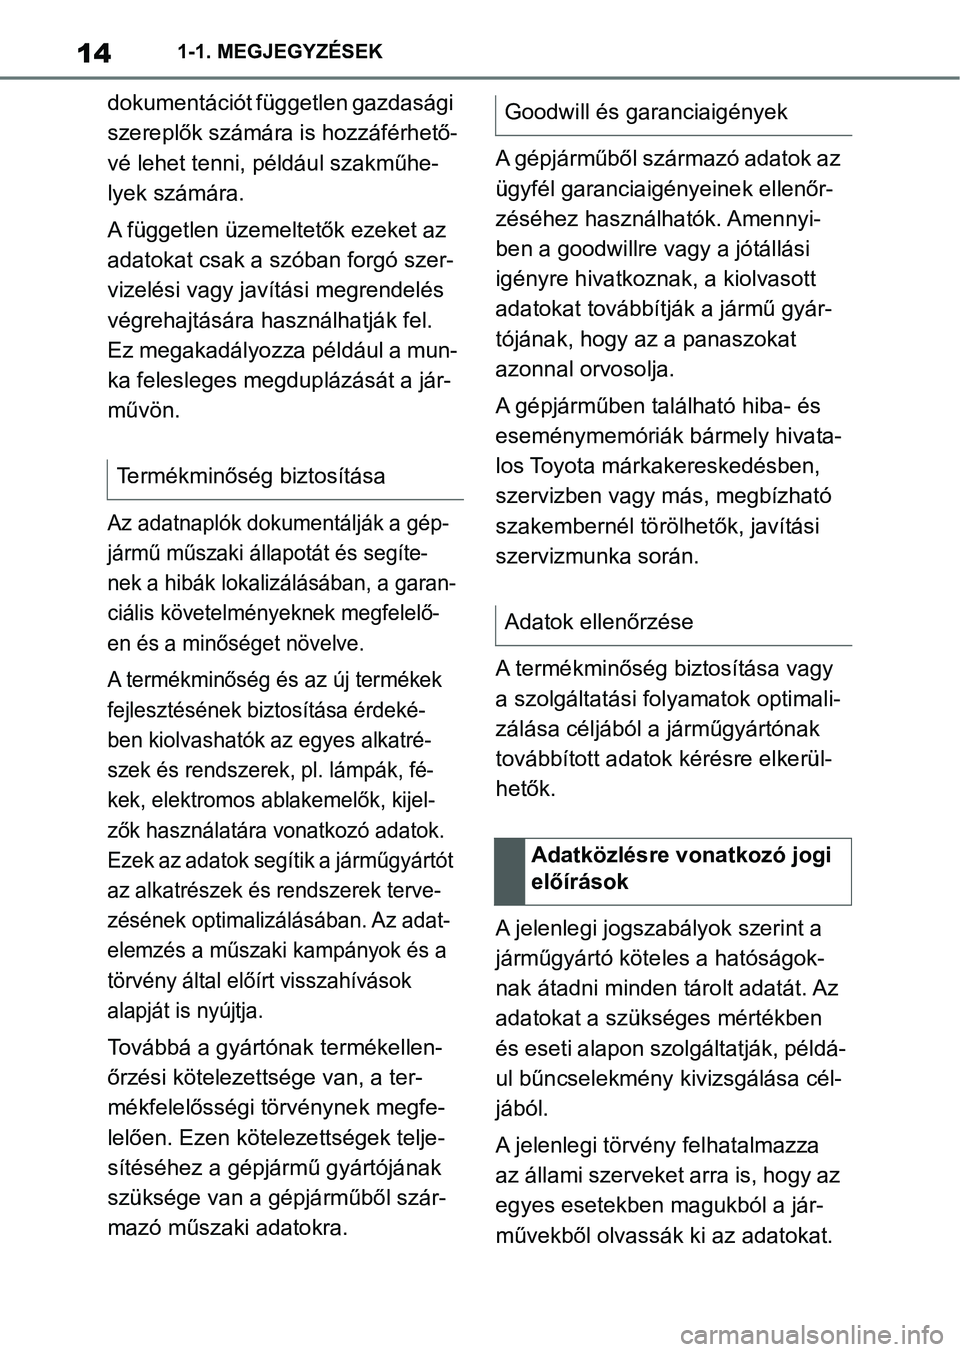 TOYOTA SUPRA 2020  Kezelési útmutató (in Hungarian) 141-1. MEGJEGYZÉSEK
dokumentációt független gazdasági 
szereplők számára is hozzáférhető-
vé lehet tenni, például szakműhe-
lyek számára.
A független üzemeltetők ezeket az 
adatoka